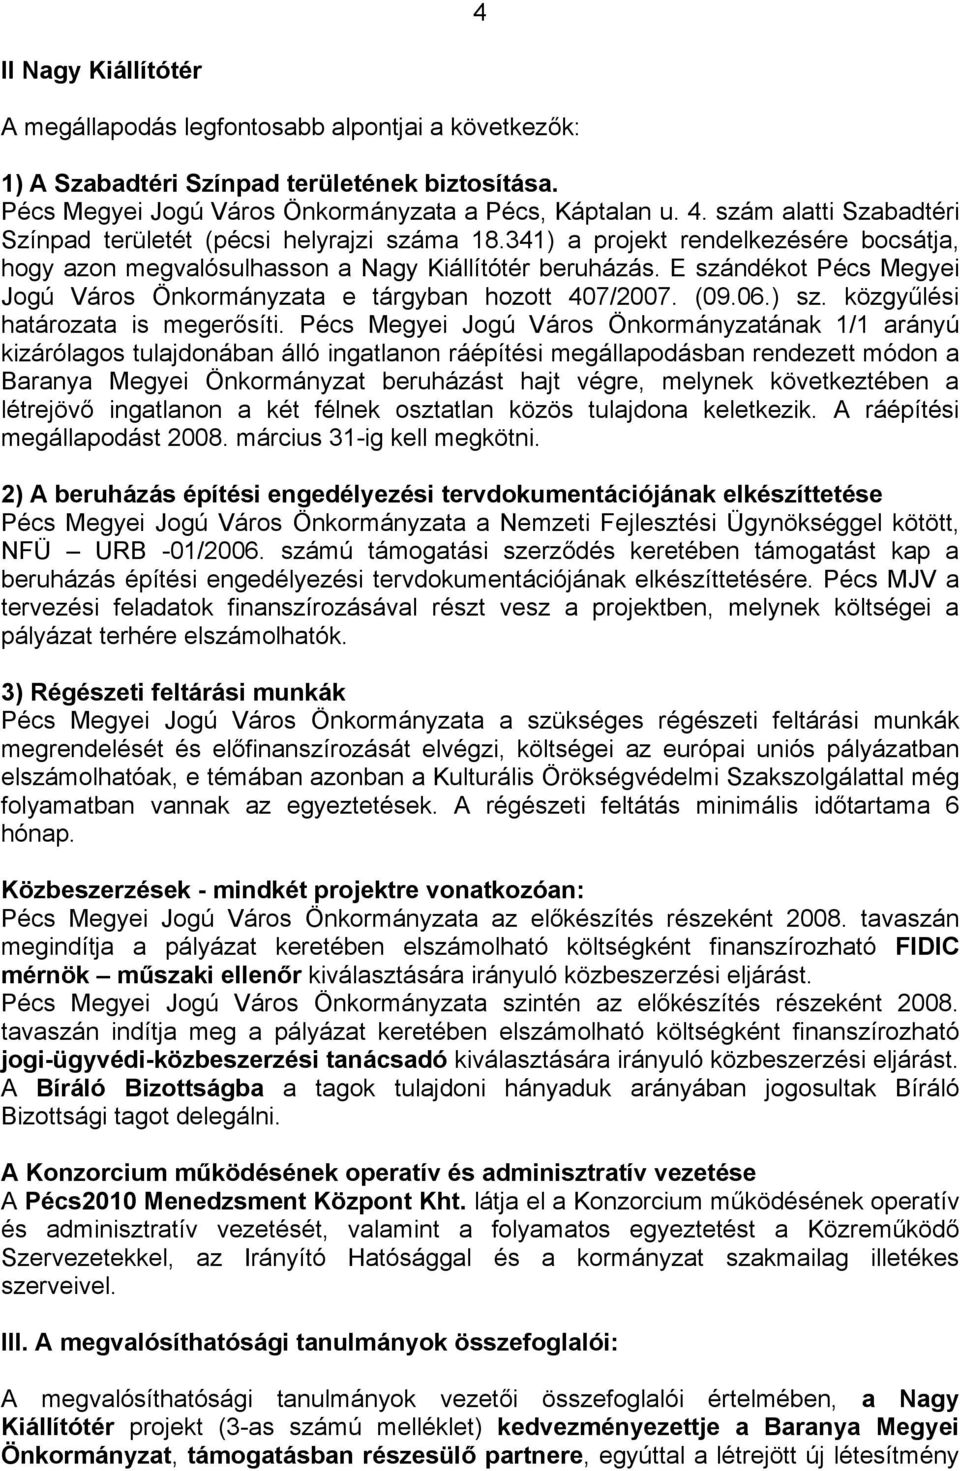 E szándékot Pécs Megyei Jogú Város Önkormányzata e tárgyban hozott 407/2007. (09.06.) sz. közgyűlési határozata is megerősíti.